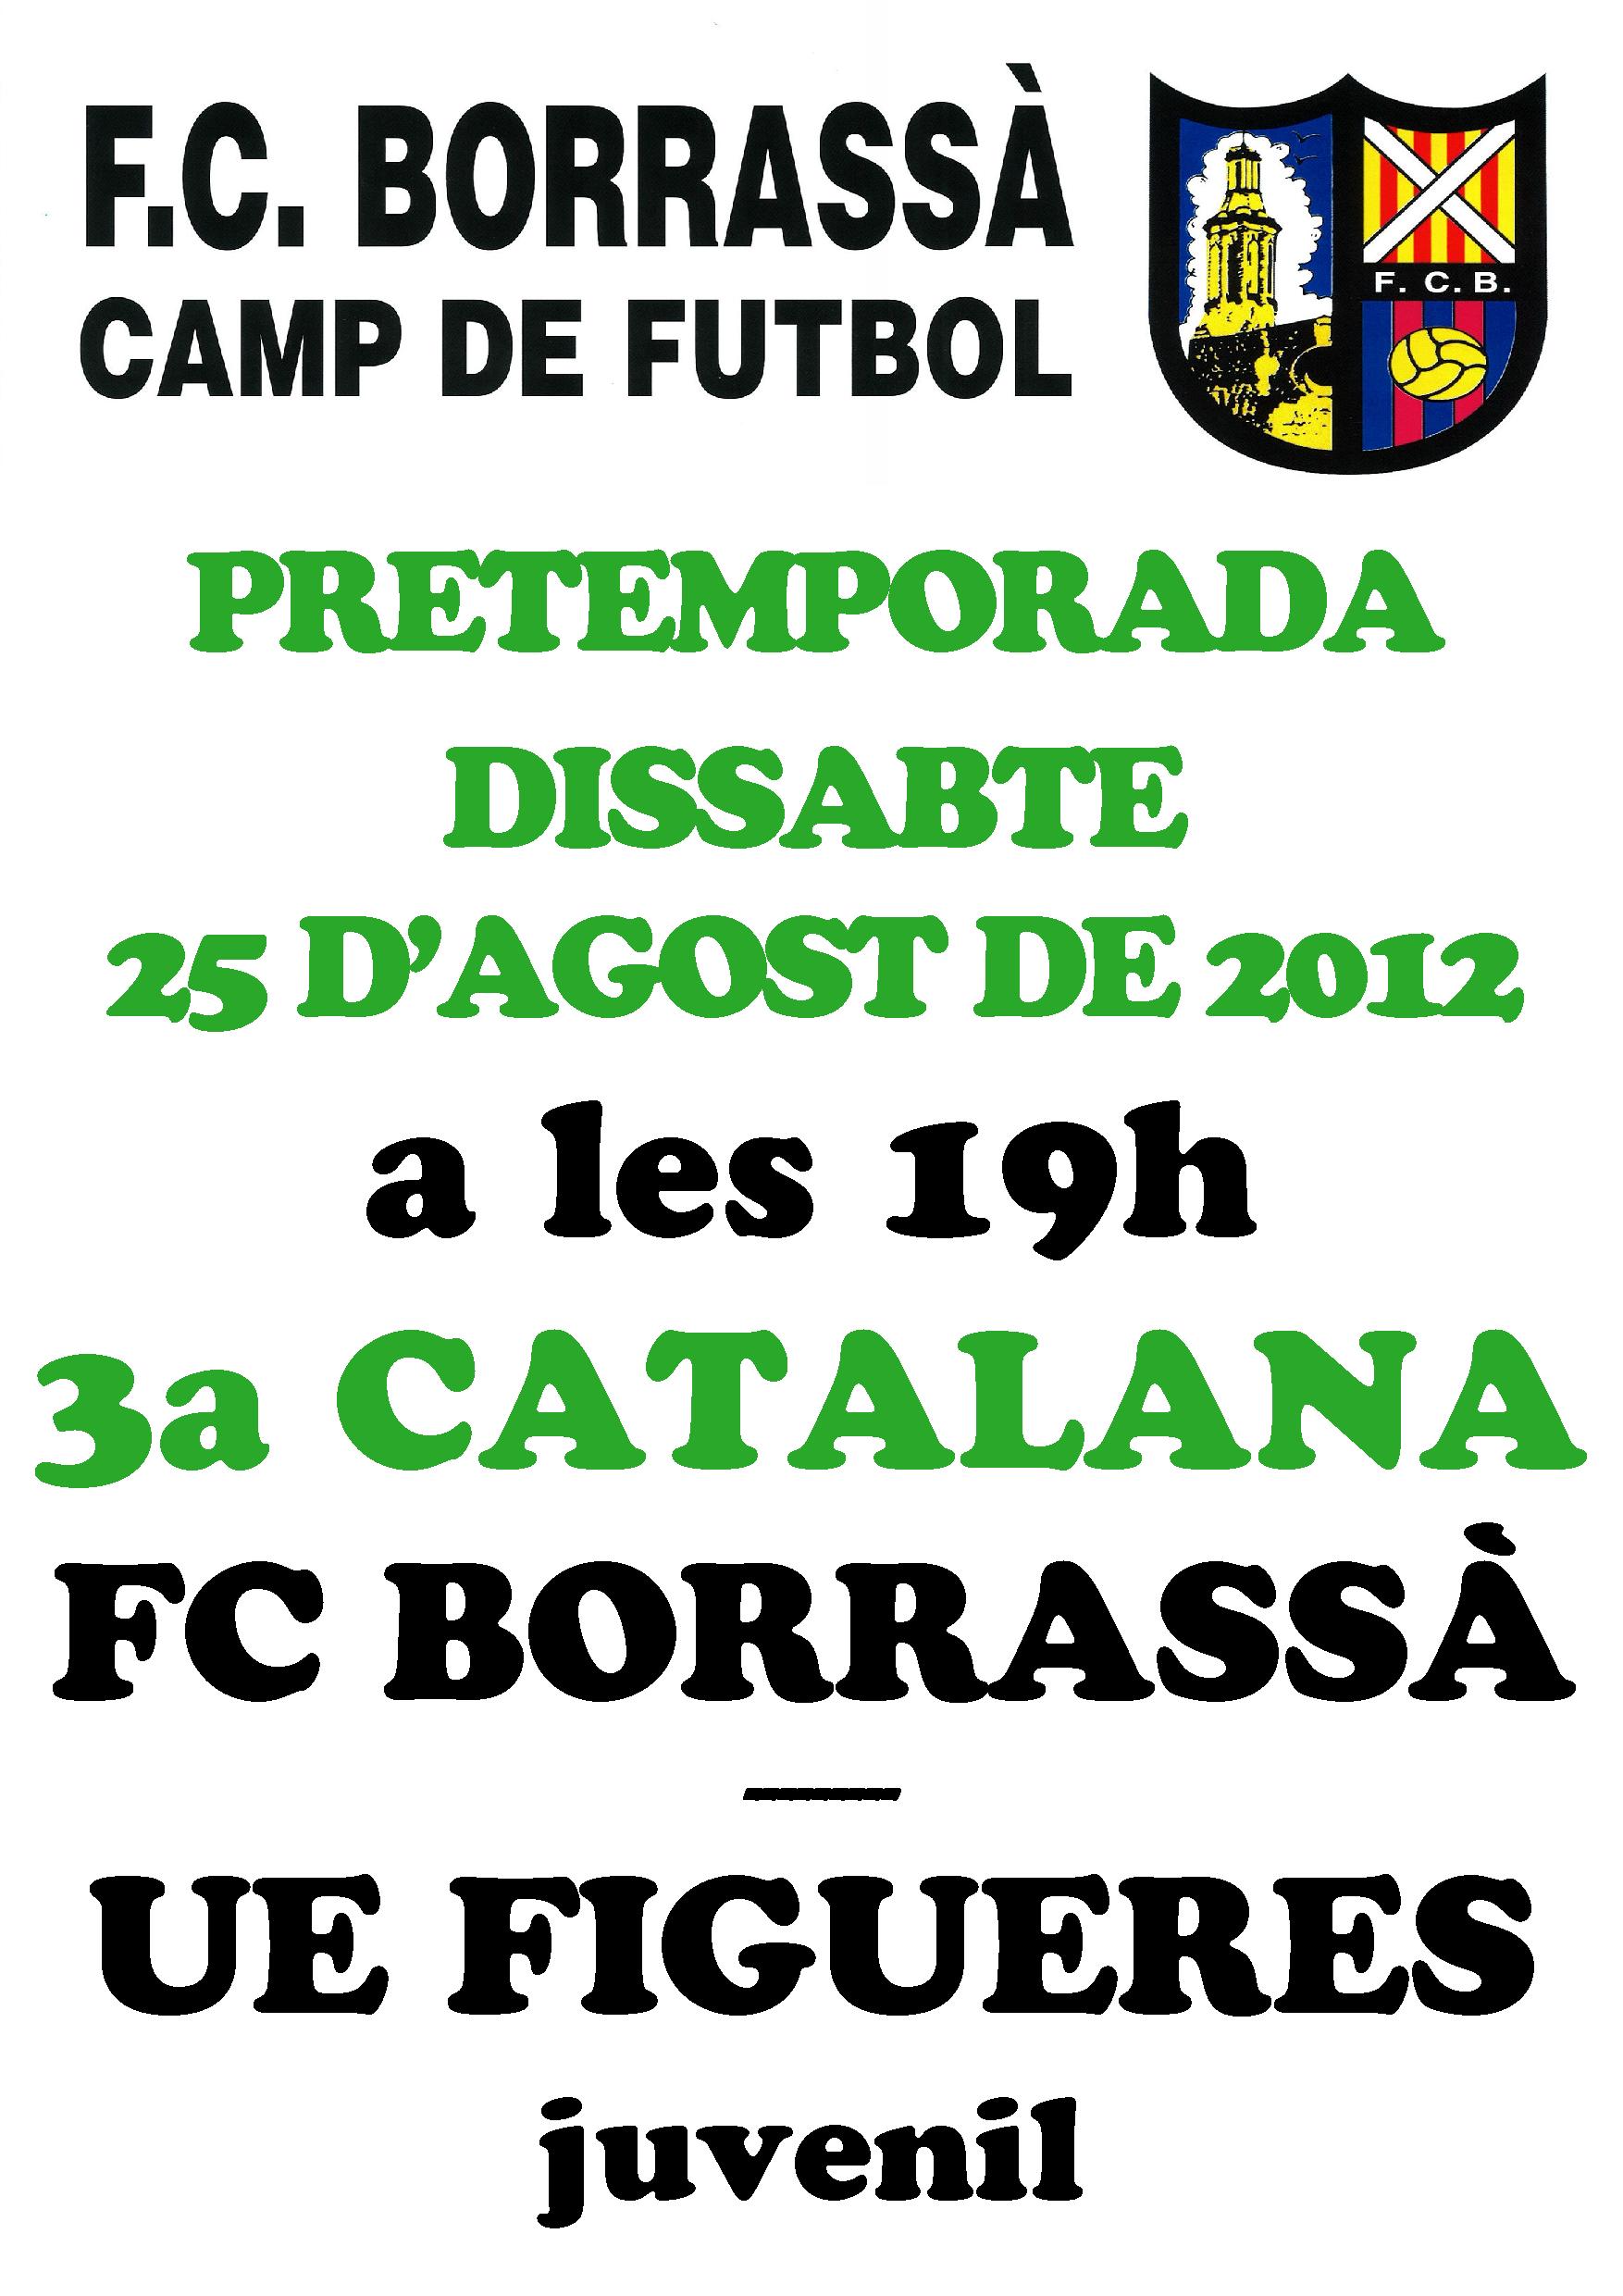 Aquest dissabte, a les 7 de la tarda, l'equip del Futbol Club Borrassà que milita a 3a catalana s'enfrontarà a la UE Figueres juvenil, en el segon partit de pretemporada que es juga a Borrassà. 